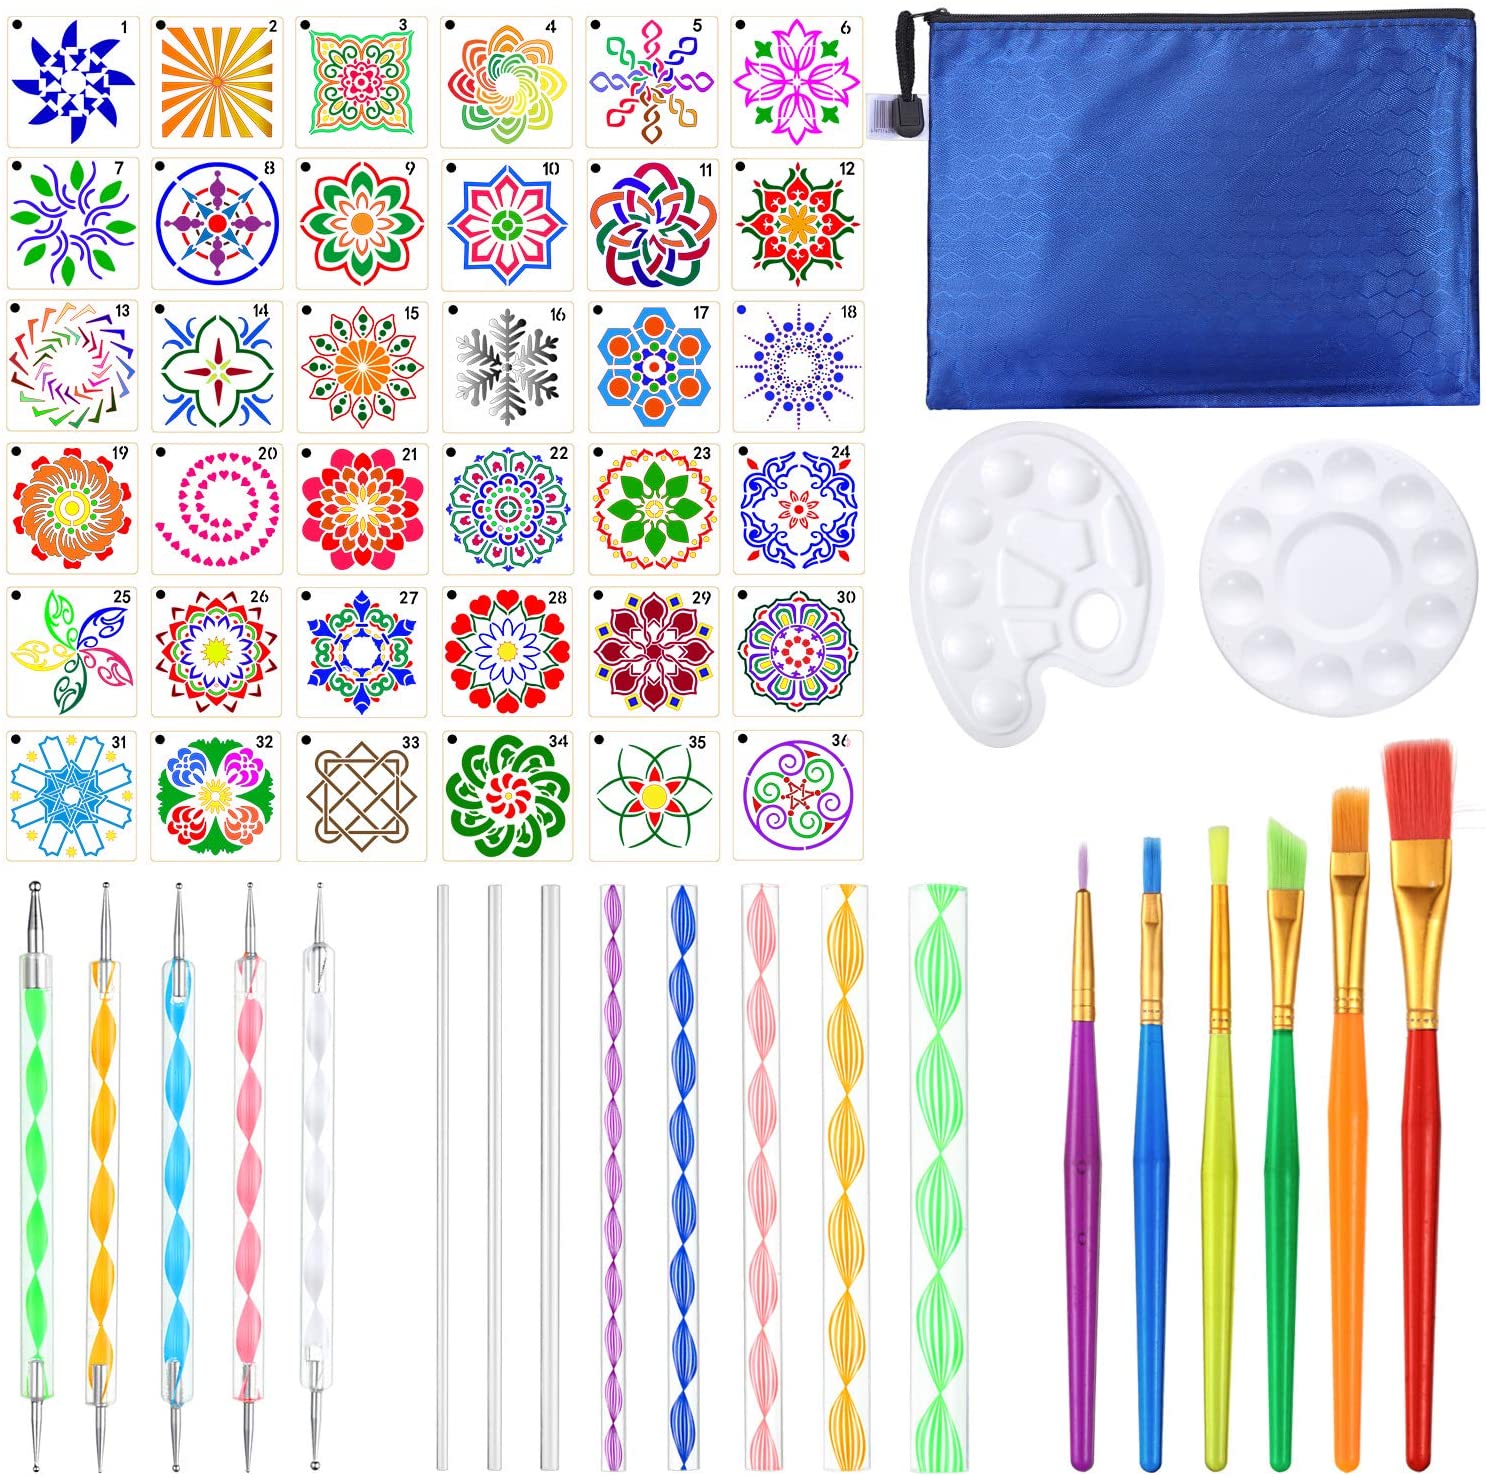 Juego de 58 herramientas de punteo para pintar mandalas, incluye estarcillo  de mandala, lápiz óptico, bandeja de pintura acrílica y bolsa de